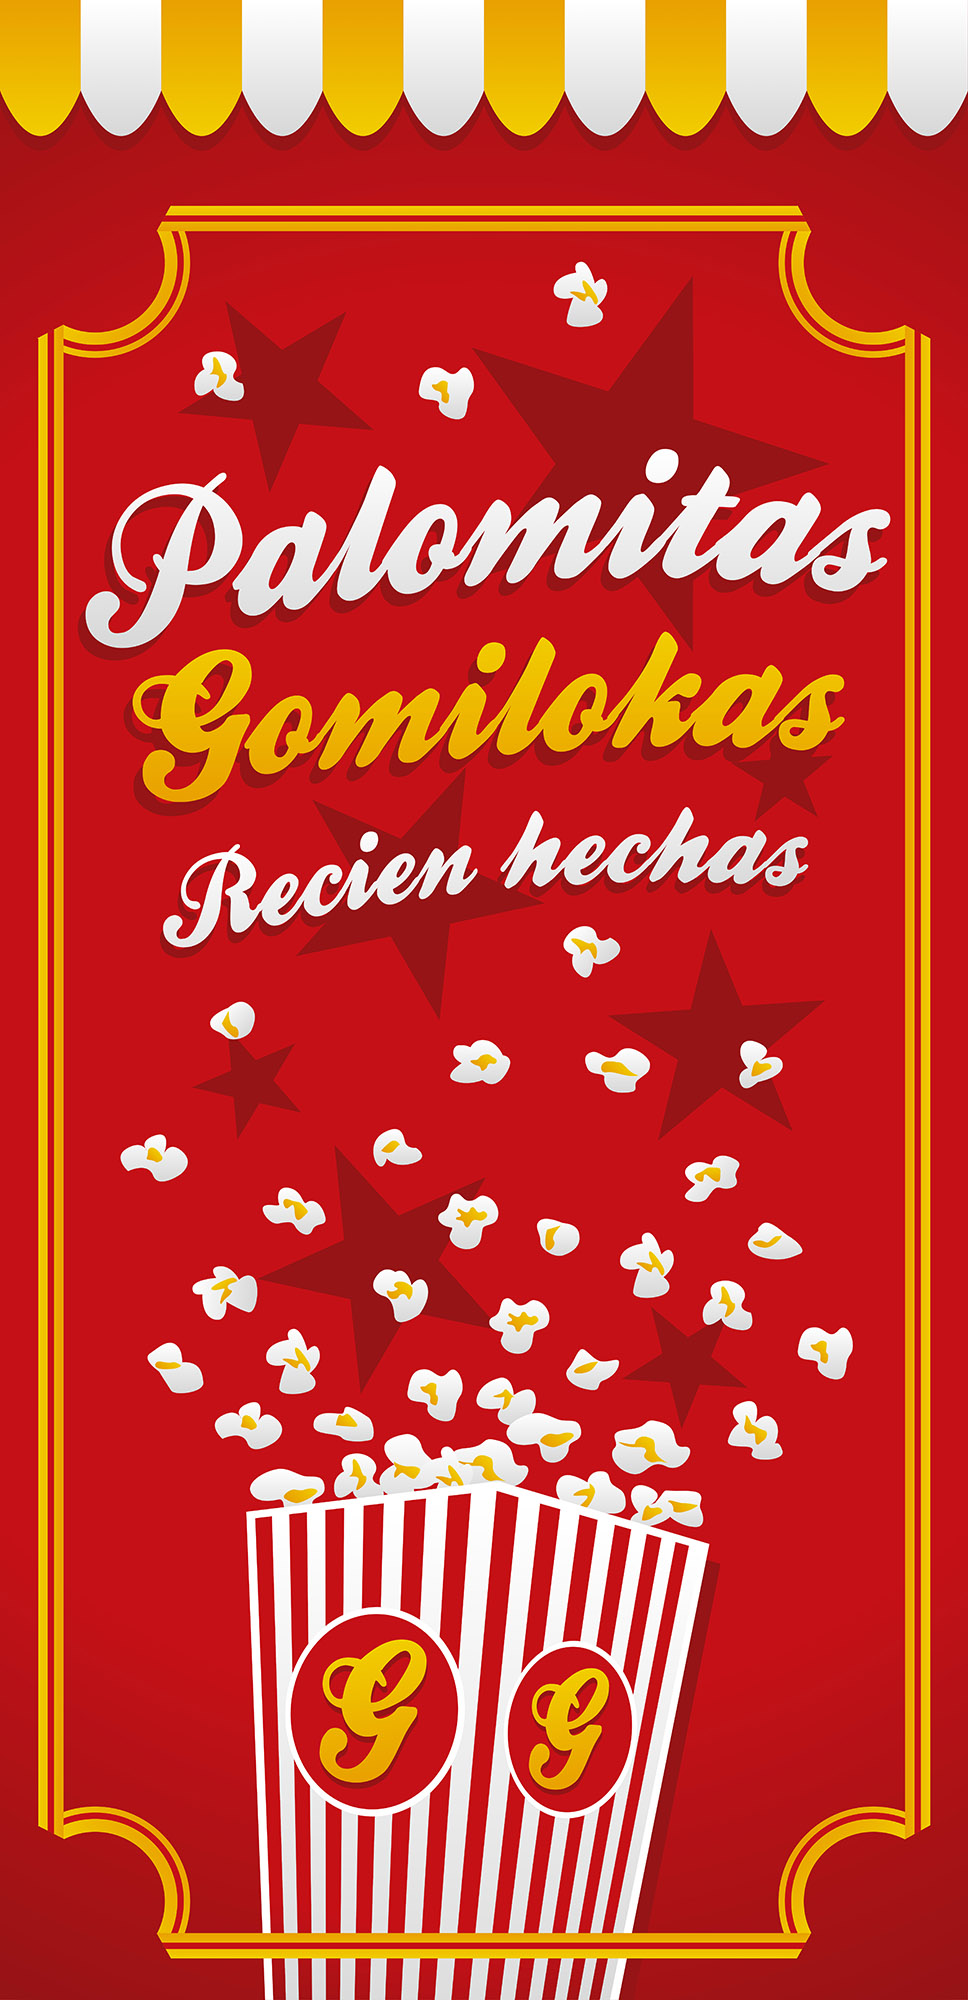 Cartel promocional y bolsas para palomitas de Gomilokas